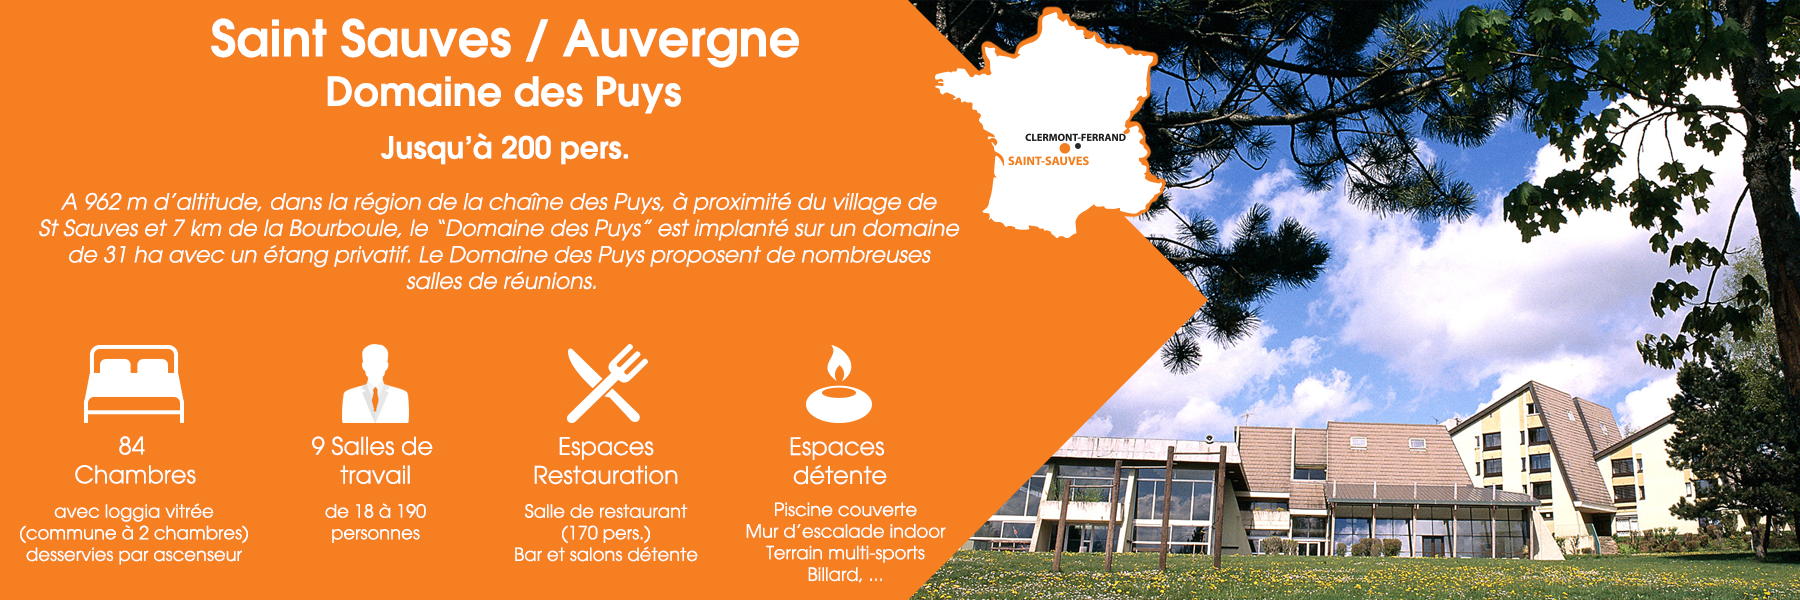 Le Domaine des Puys à Saint-Sauves, en Auvergne, peut accueillir jusqu’à 200 personnes. A 962 m d’altitude, dans la région de la chaîne des Puys, à proximité du village de St Sauves et 7 km de la Bourboule, le “Domaine des Puys” est implanté sur un domaine de 31 ha avec un étang privatif. Le Domaine des Puys propose de nombreuses salles de réunions. Ce domaine est composé de 84 chambres (avec loggia vitrée, commune à deux chambres, desservies par ascenseur), de 9 salles de travail (de 18 à 190 personnes), d’espaces de restauration (une salle de restaurant pour 170 personnes, un bar et un salon détente) et d’espaces de détente (une piscine couverte, un mur d’escalade indoor, un terrain multisports et un billard).